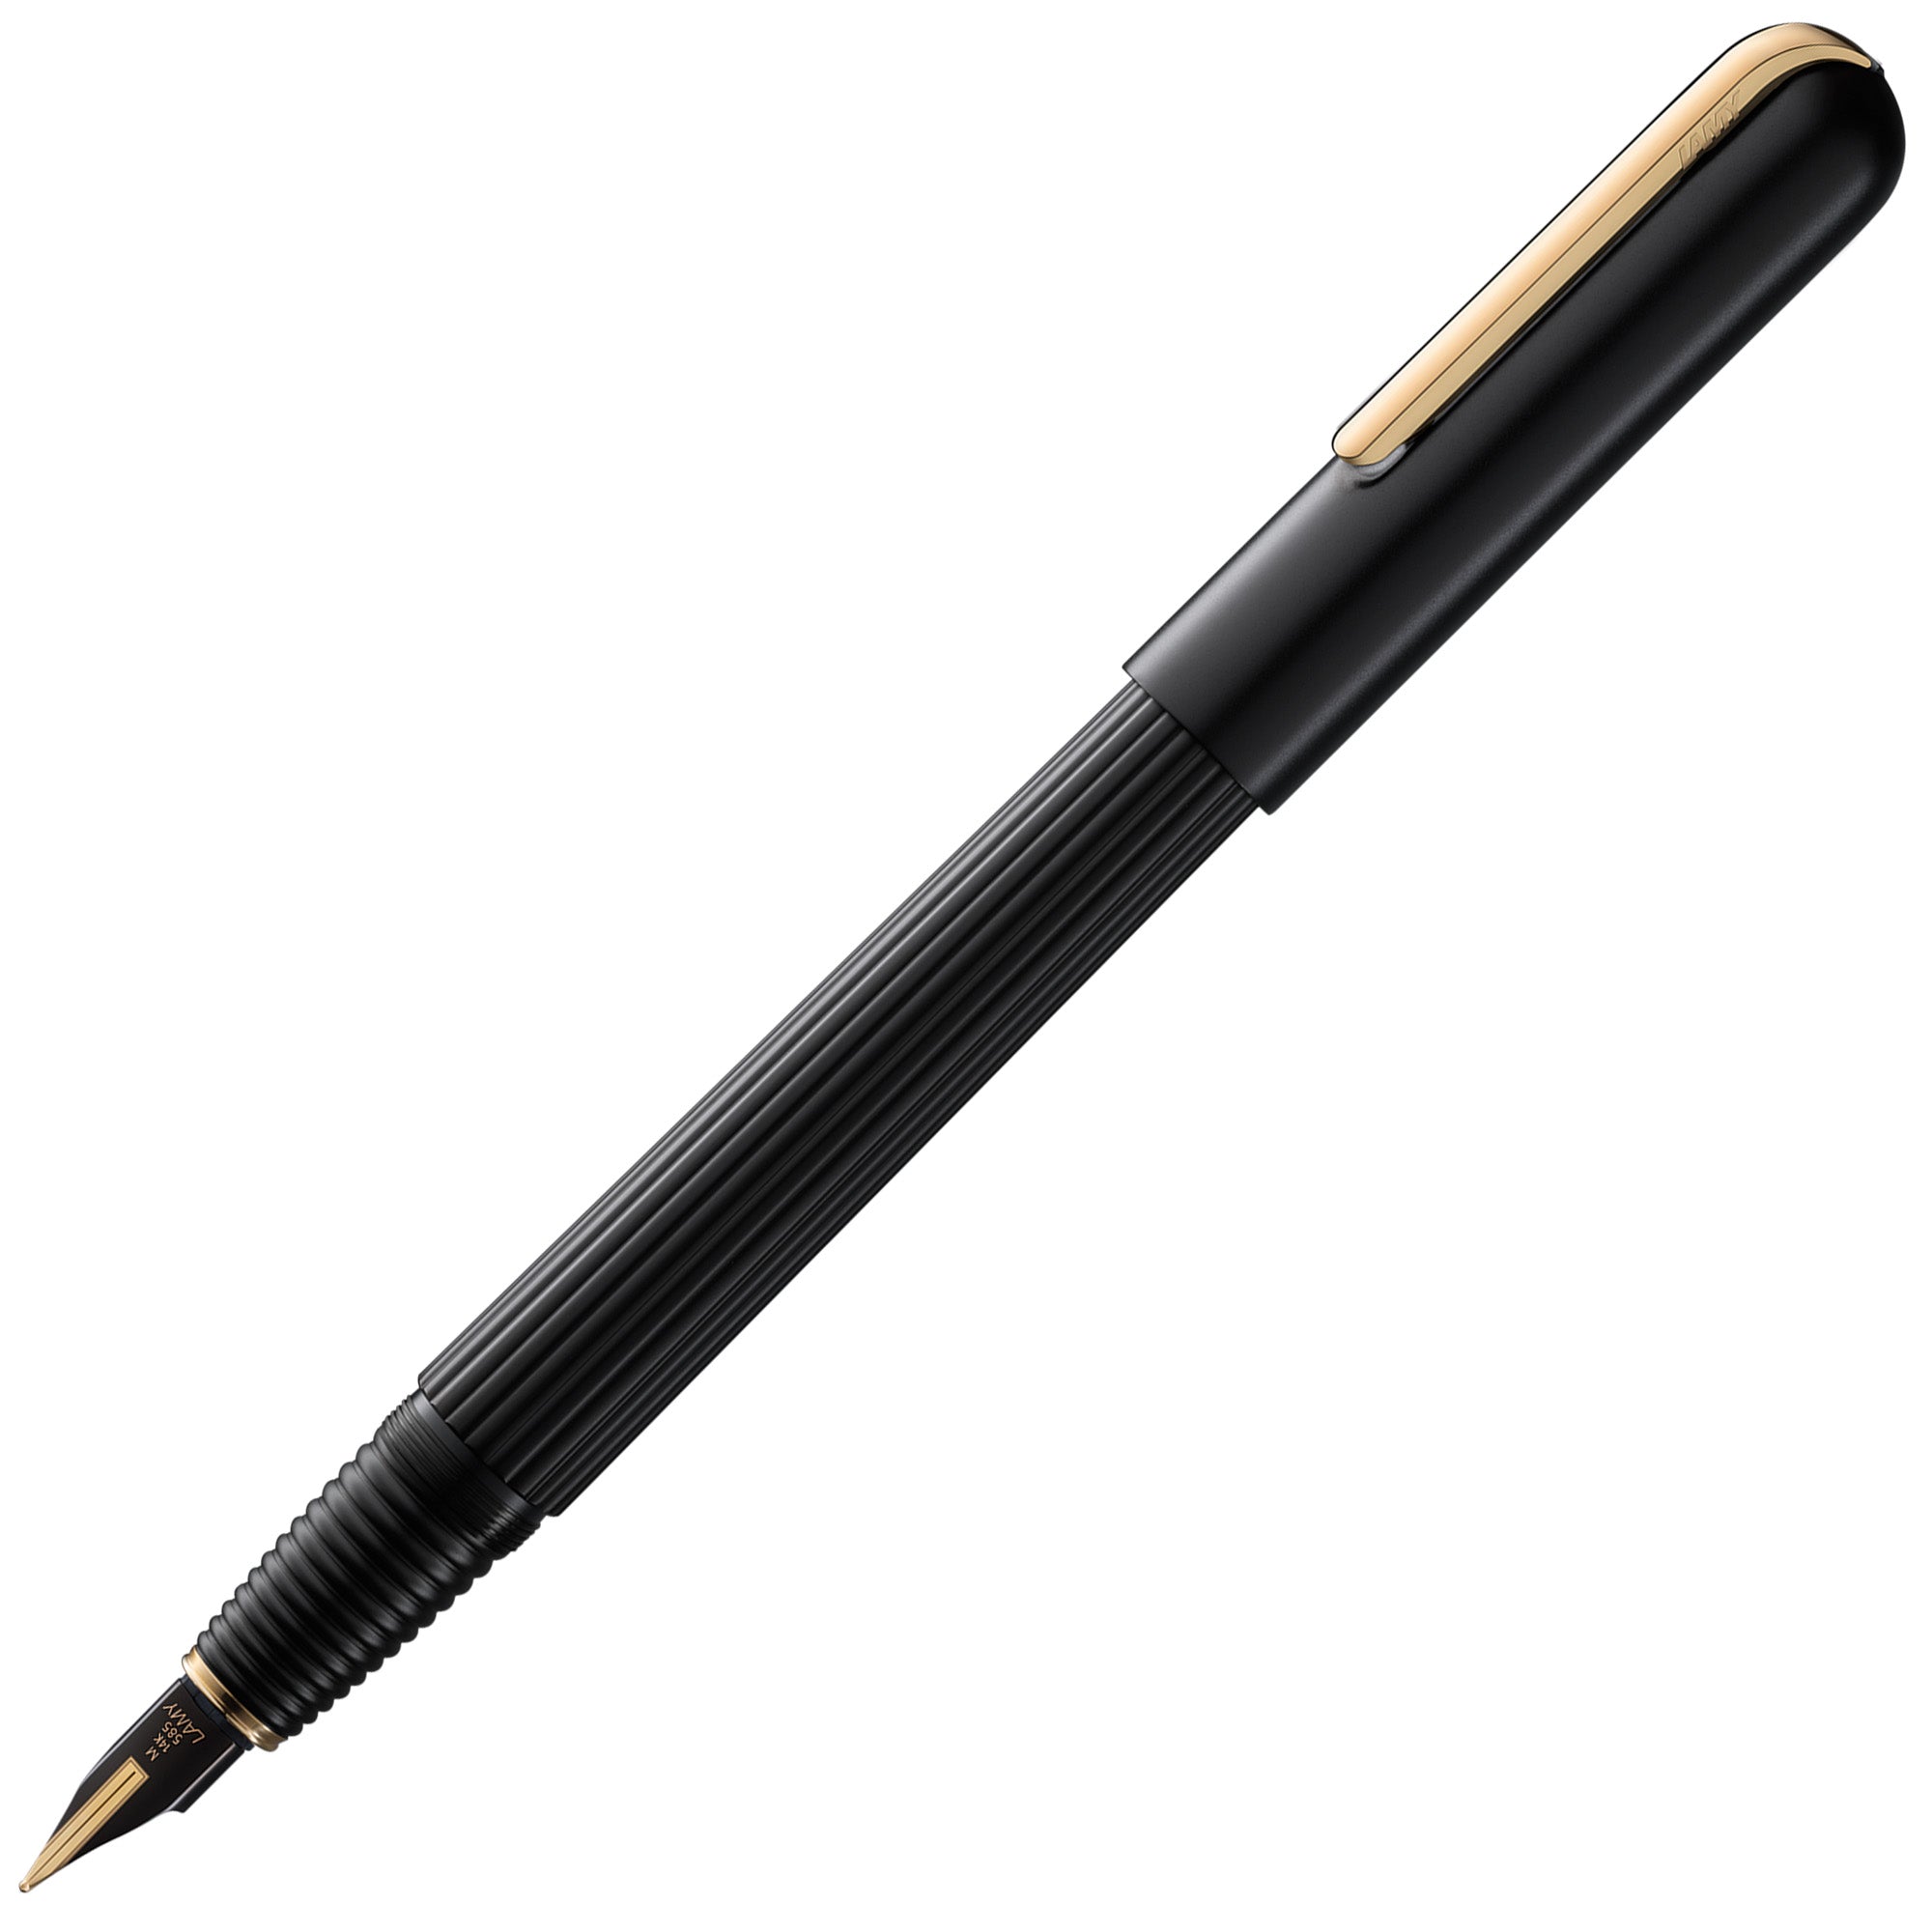 LAMY imporium matt black/gold Fountain pen